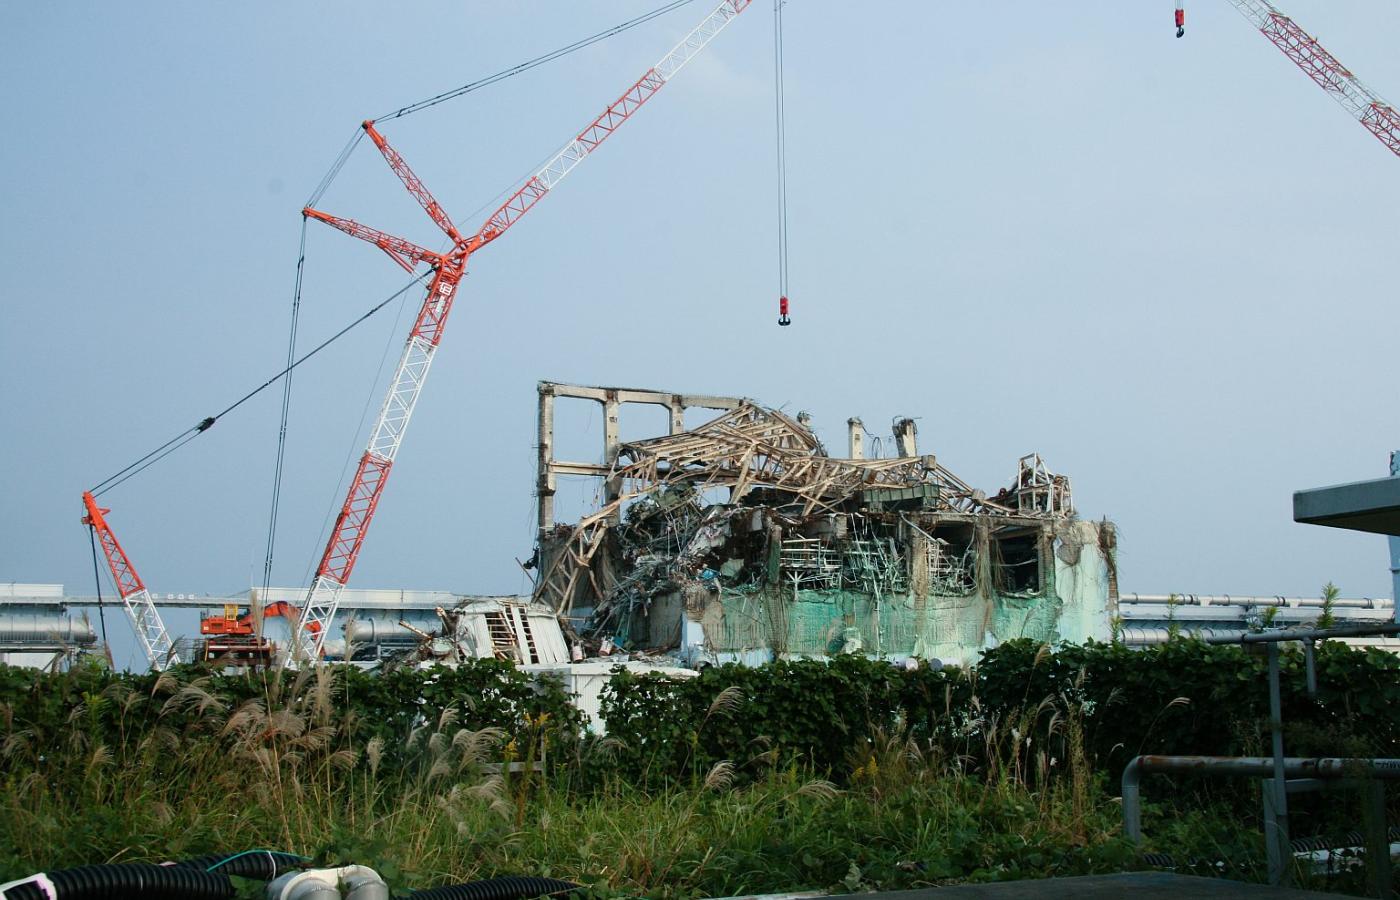 Elektrownie jądrowe w Japonii nie mają dobrej opinii. Uszkodzony reaktor jądrowy podczas katastrofy elektrowni Fukuszima.